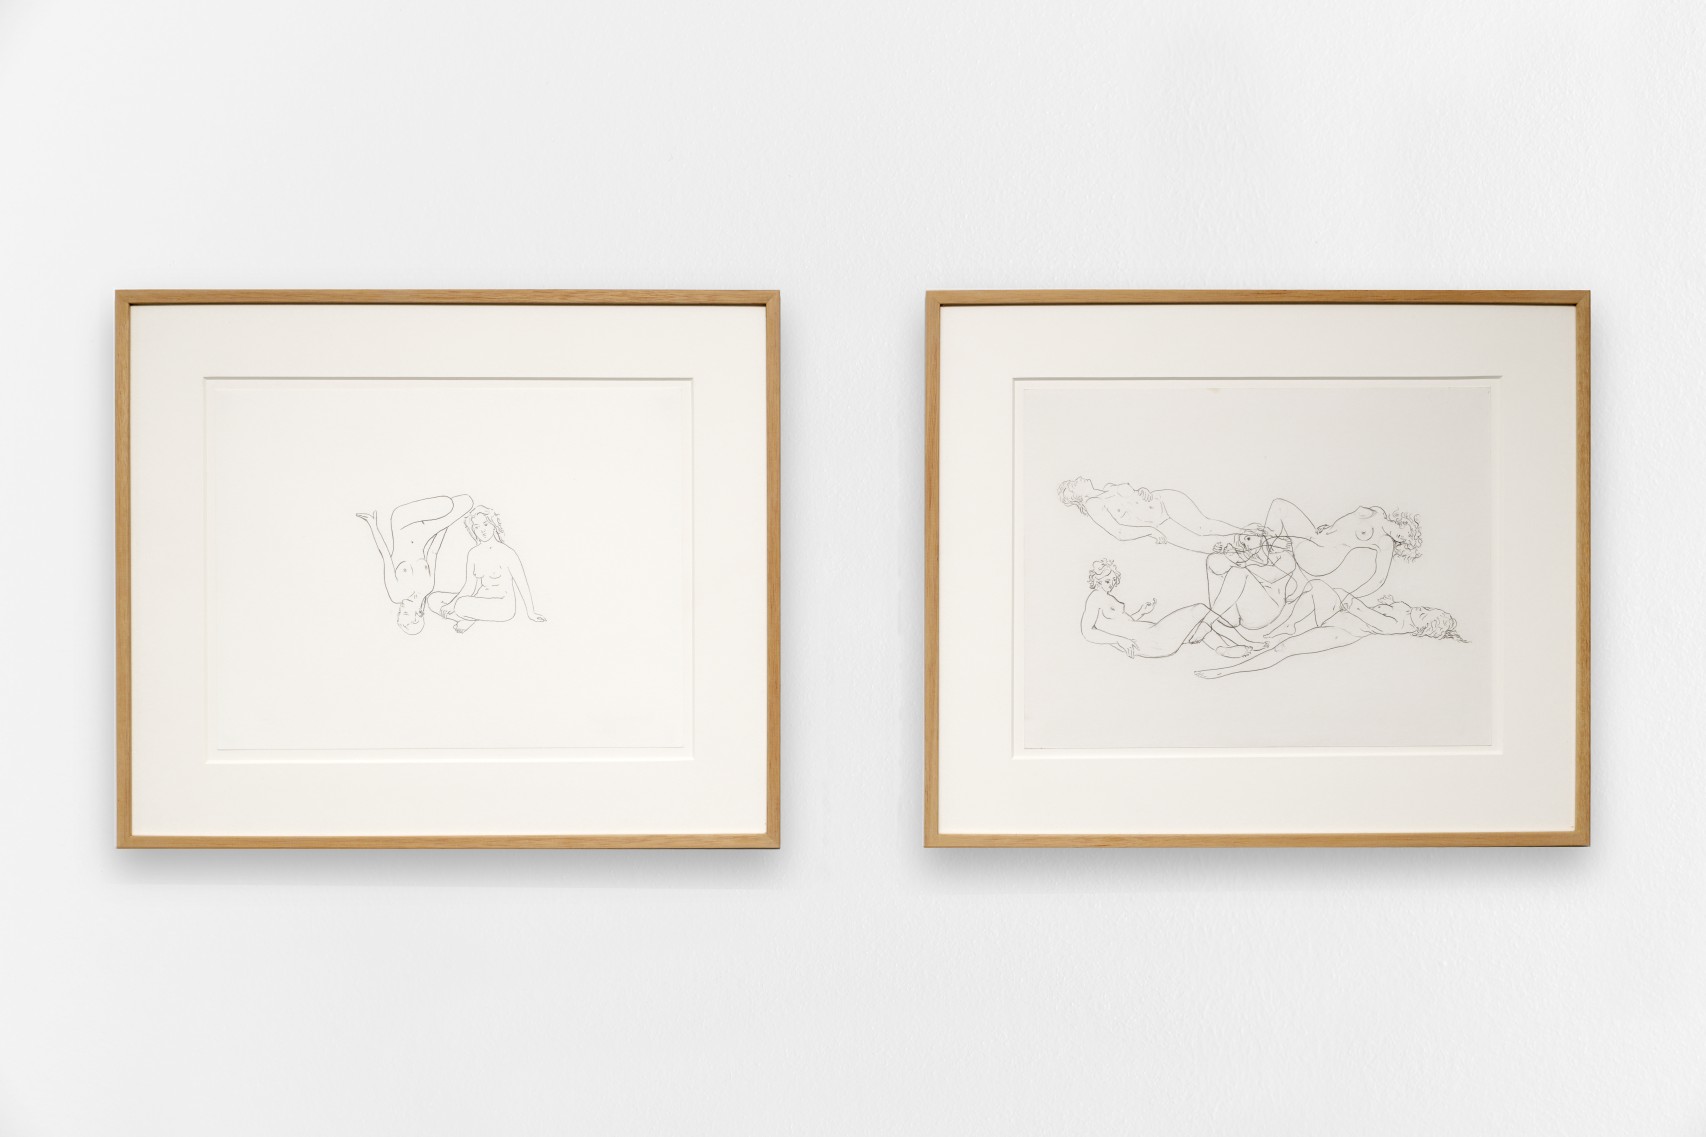 À gauche : *The Female Gaze .03*, 2021, dessin sur papier, 37 x 45 cm. À droite : *The Female Gaze .01*, 2021, dessin sur papier, 37 x 45 cm.
Courtesy the artist & Spiaggia Libera, Paris. © Aurélien Mole